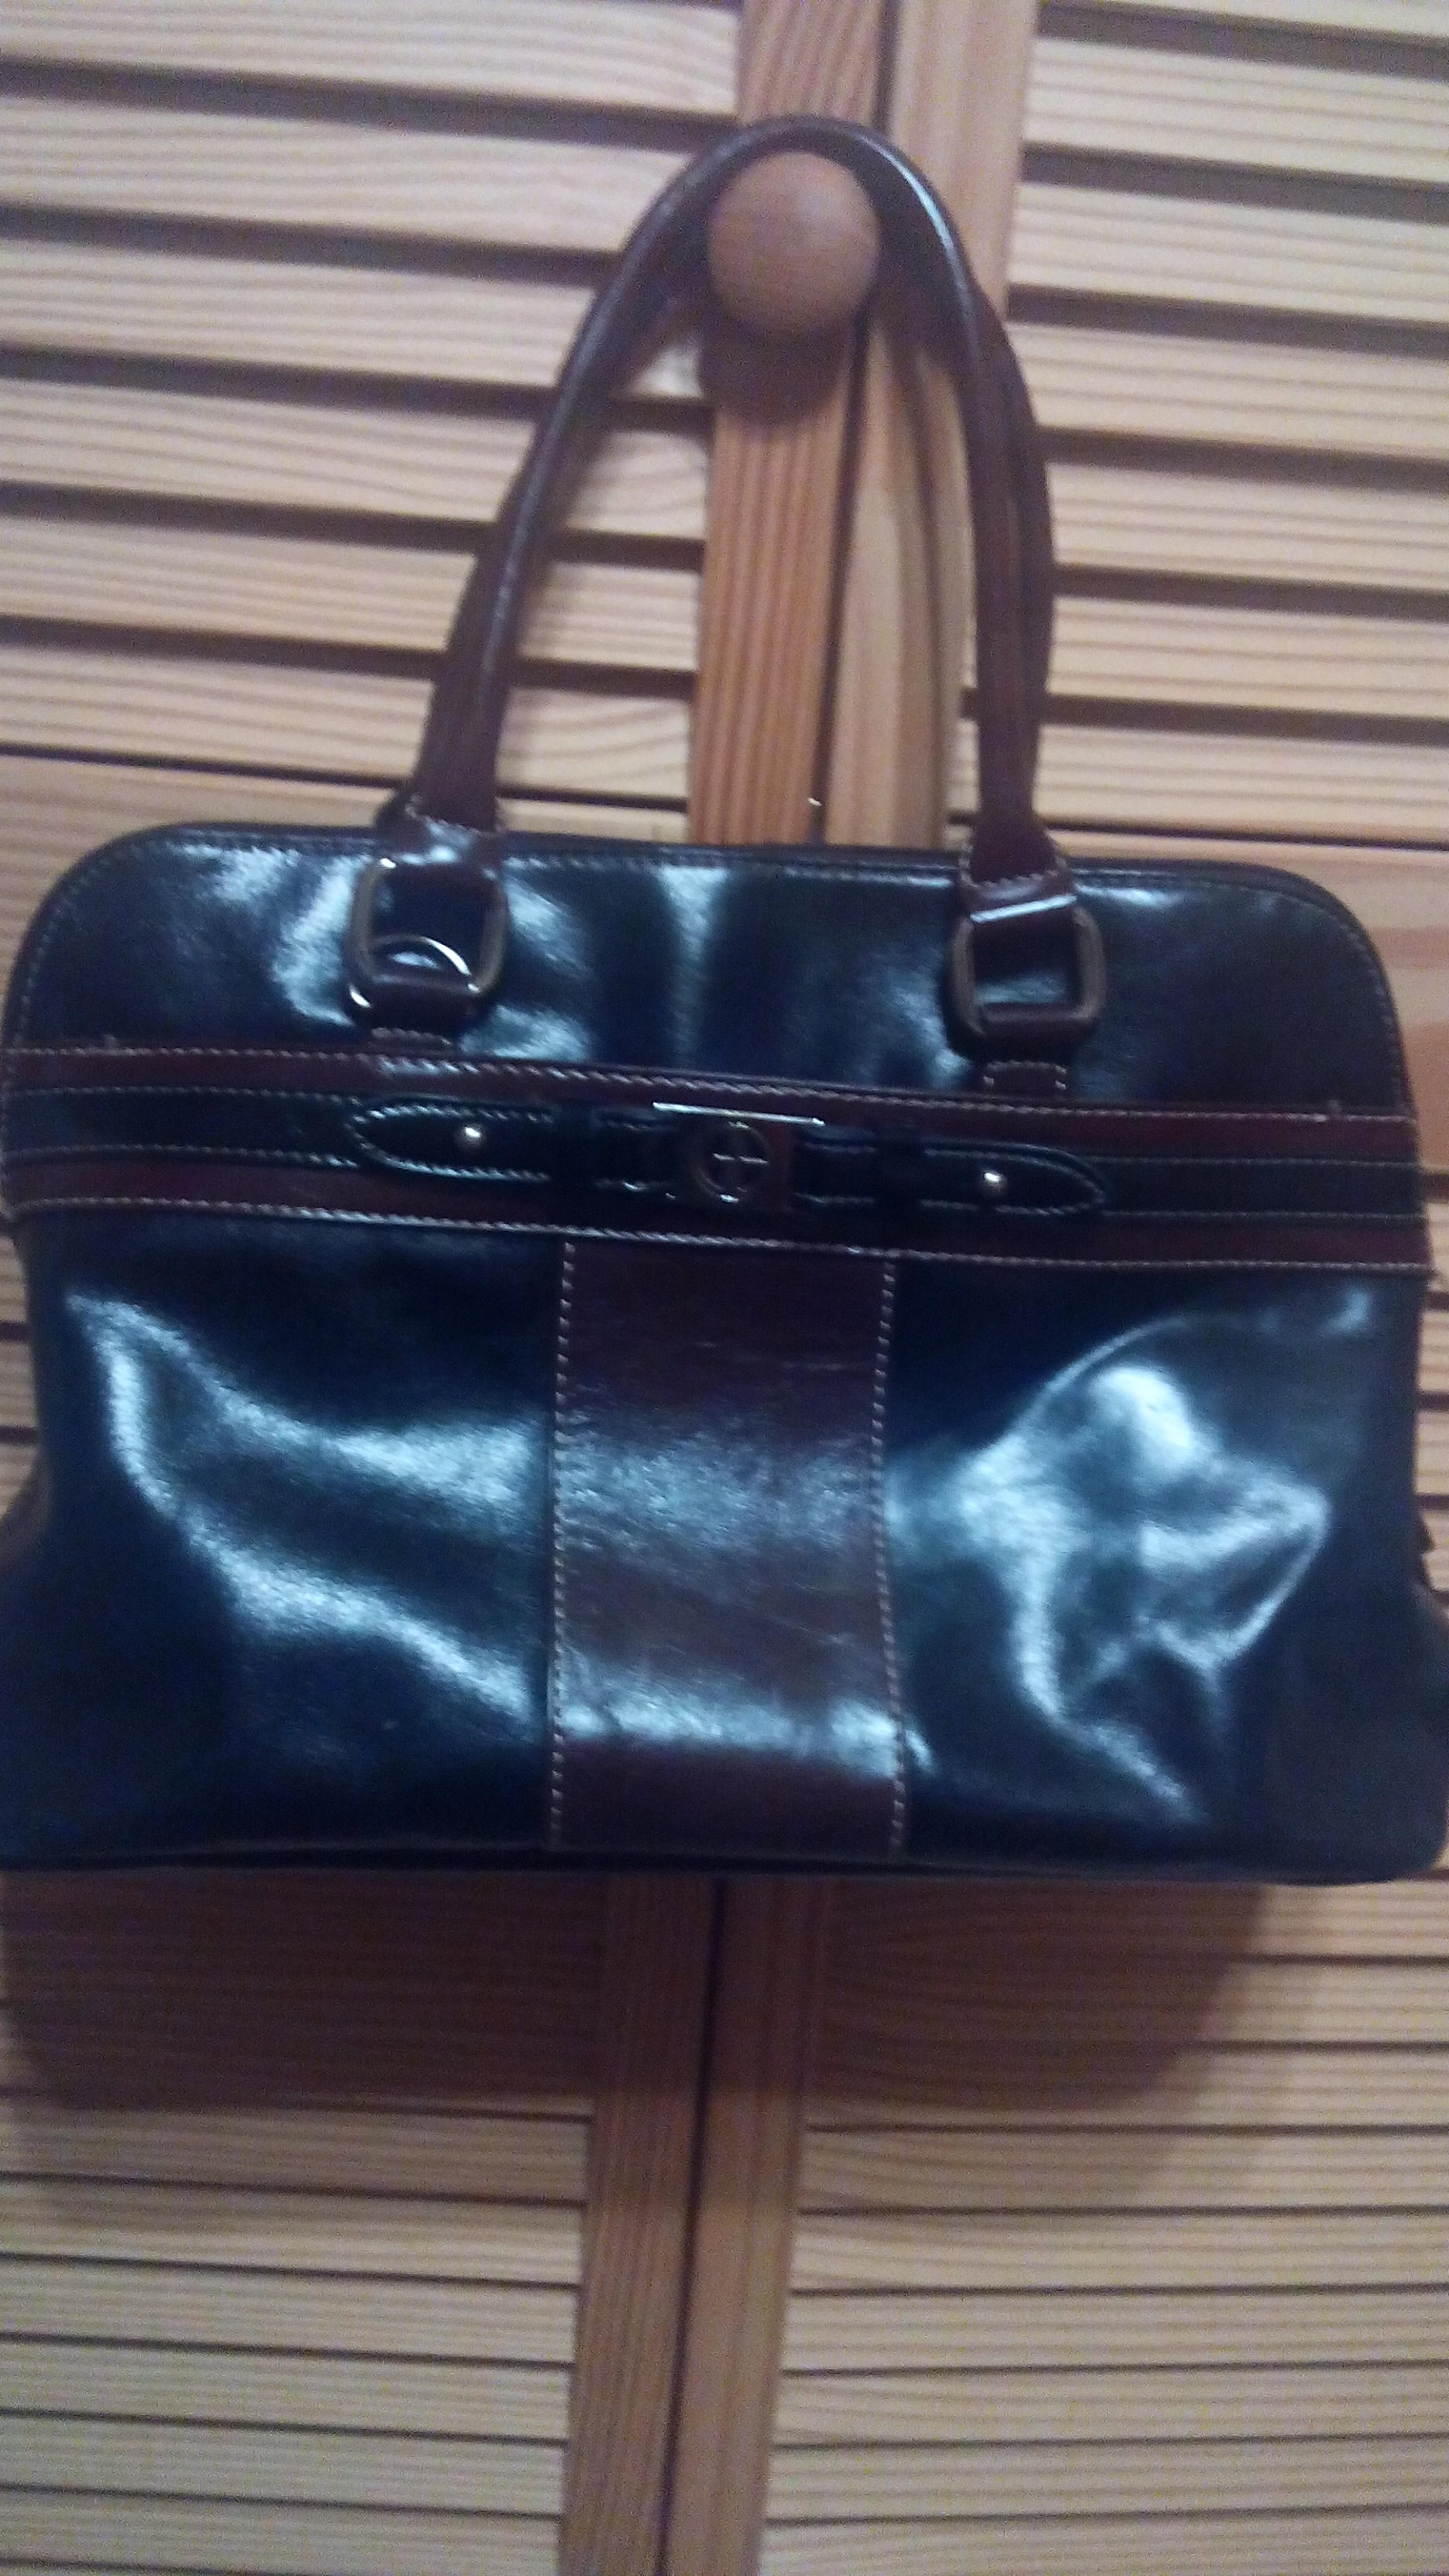 Black and Brown Giani Bernini purse